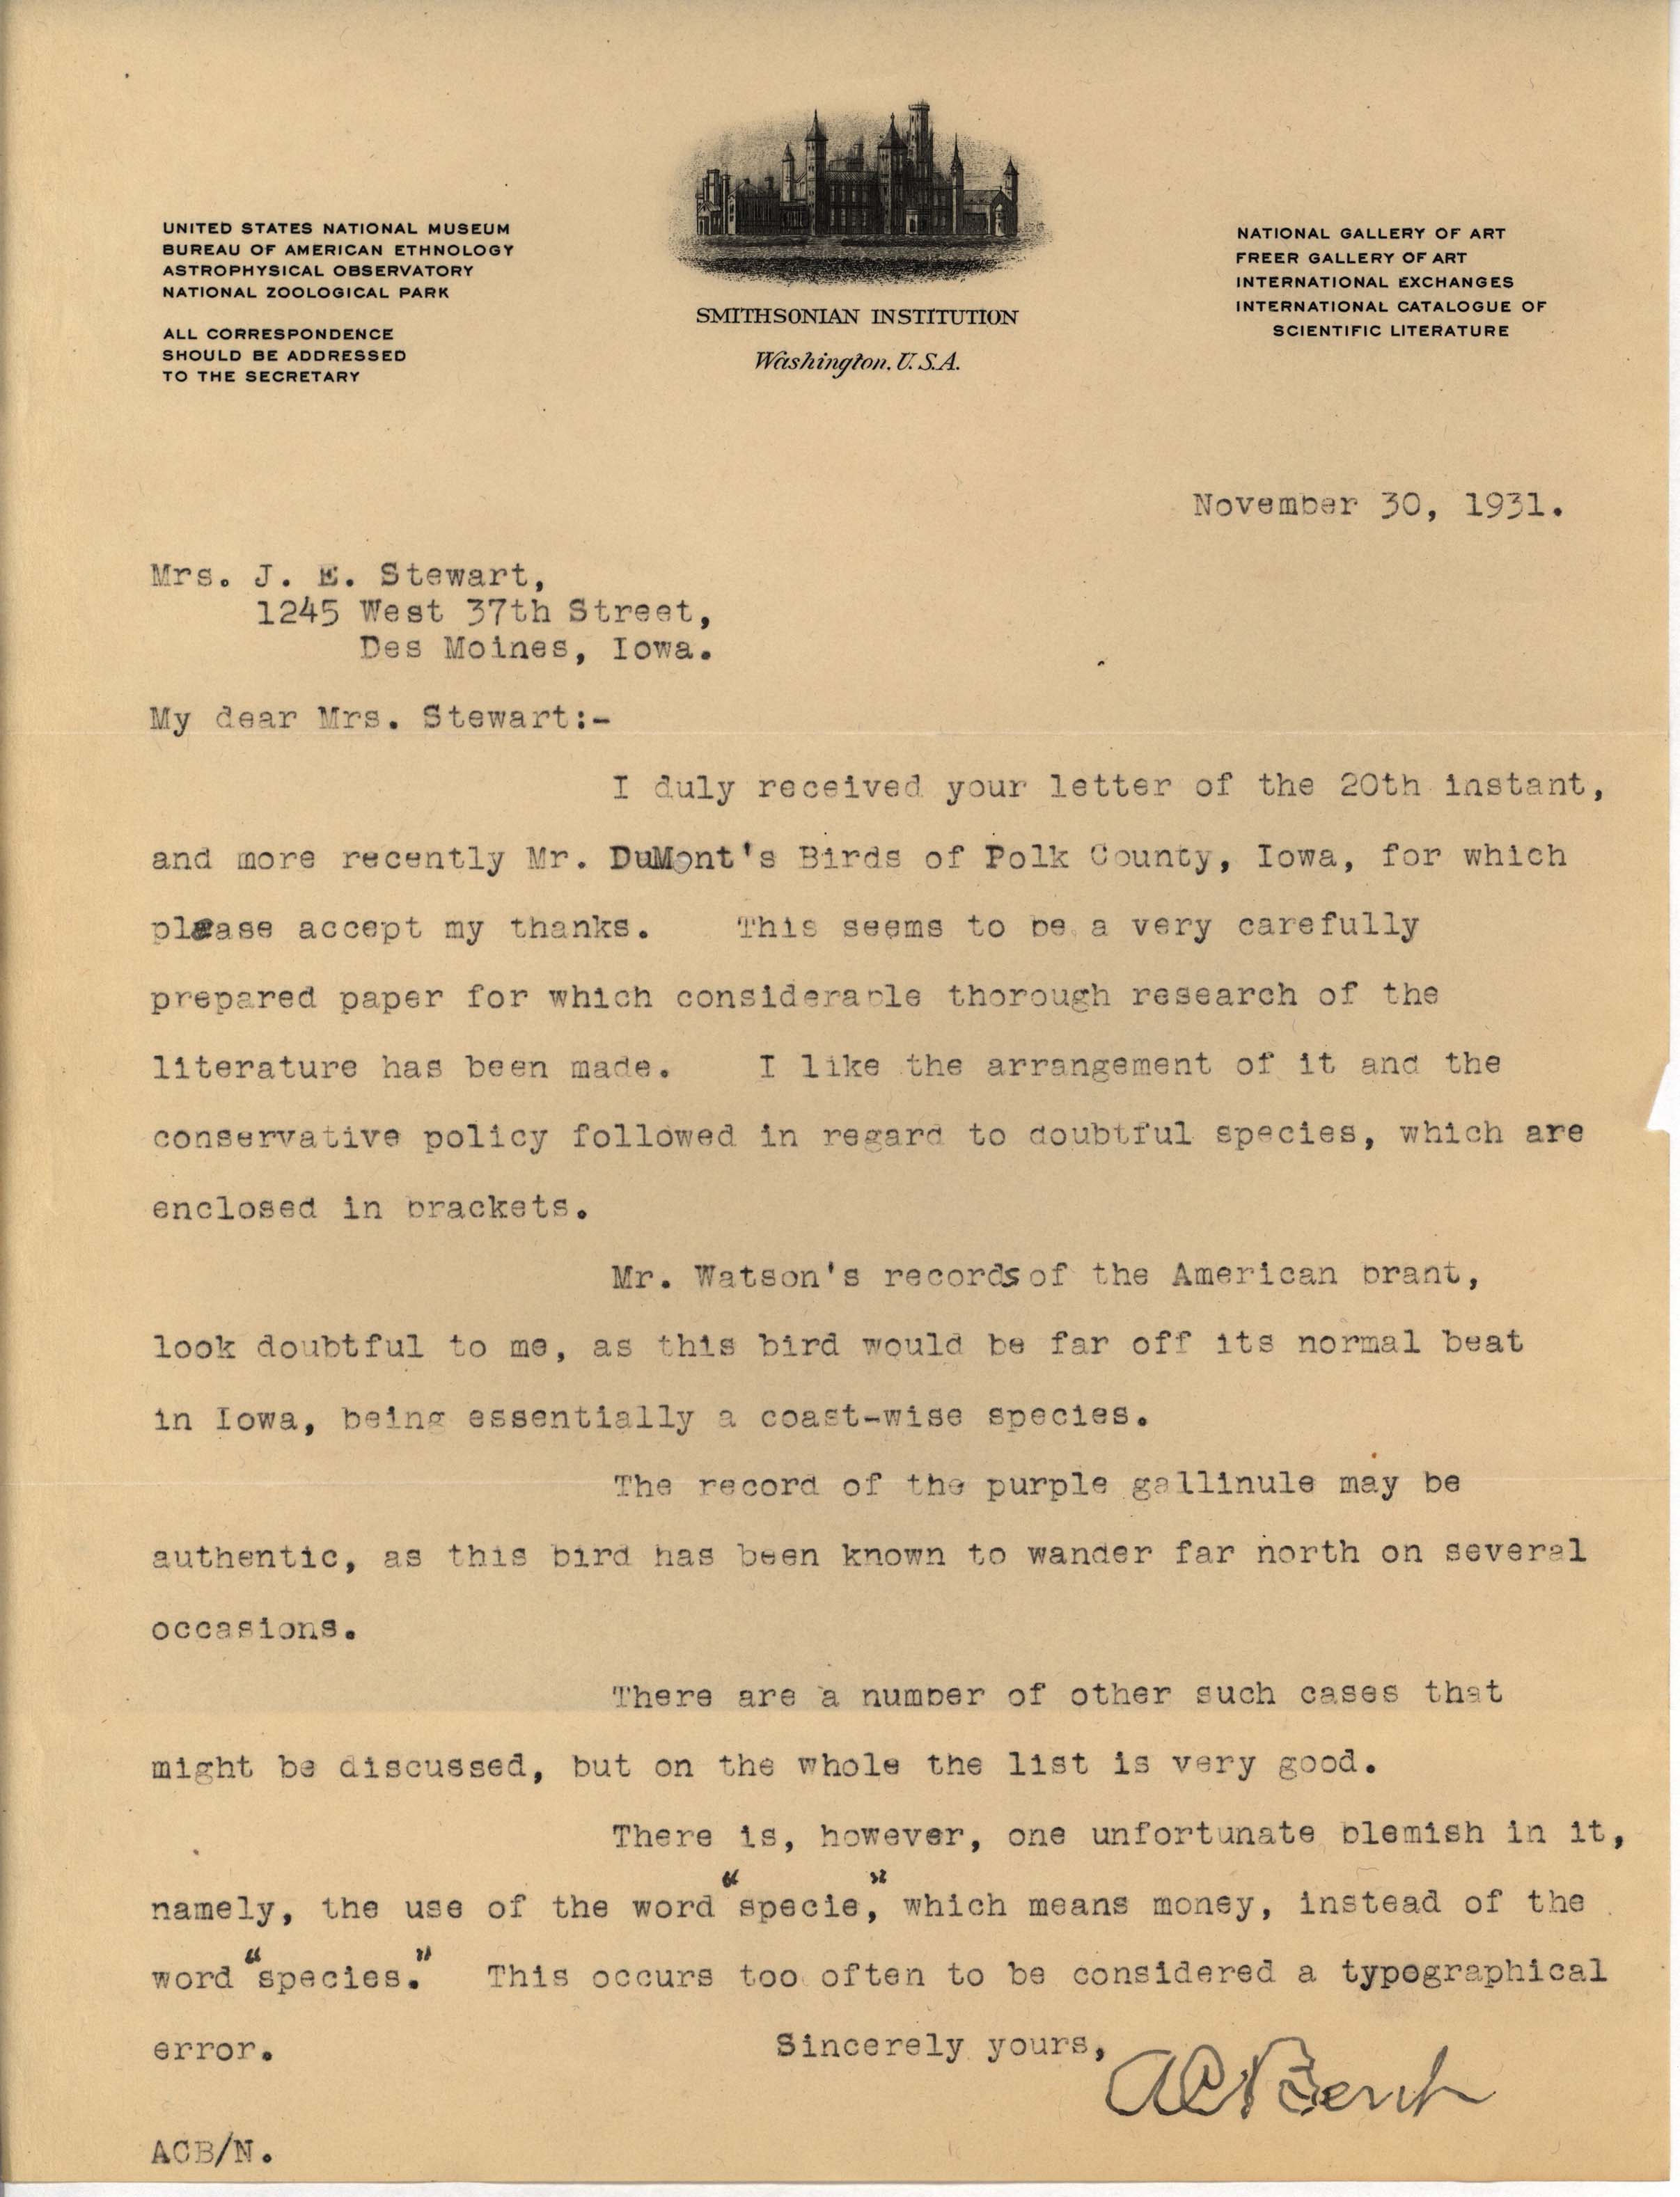 Arthur Bent letter to Mrs. J. E. Stewart regarding 